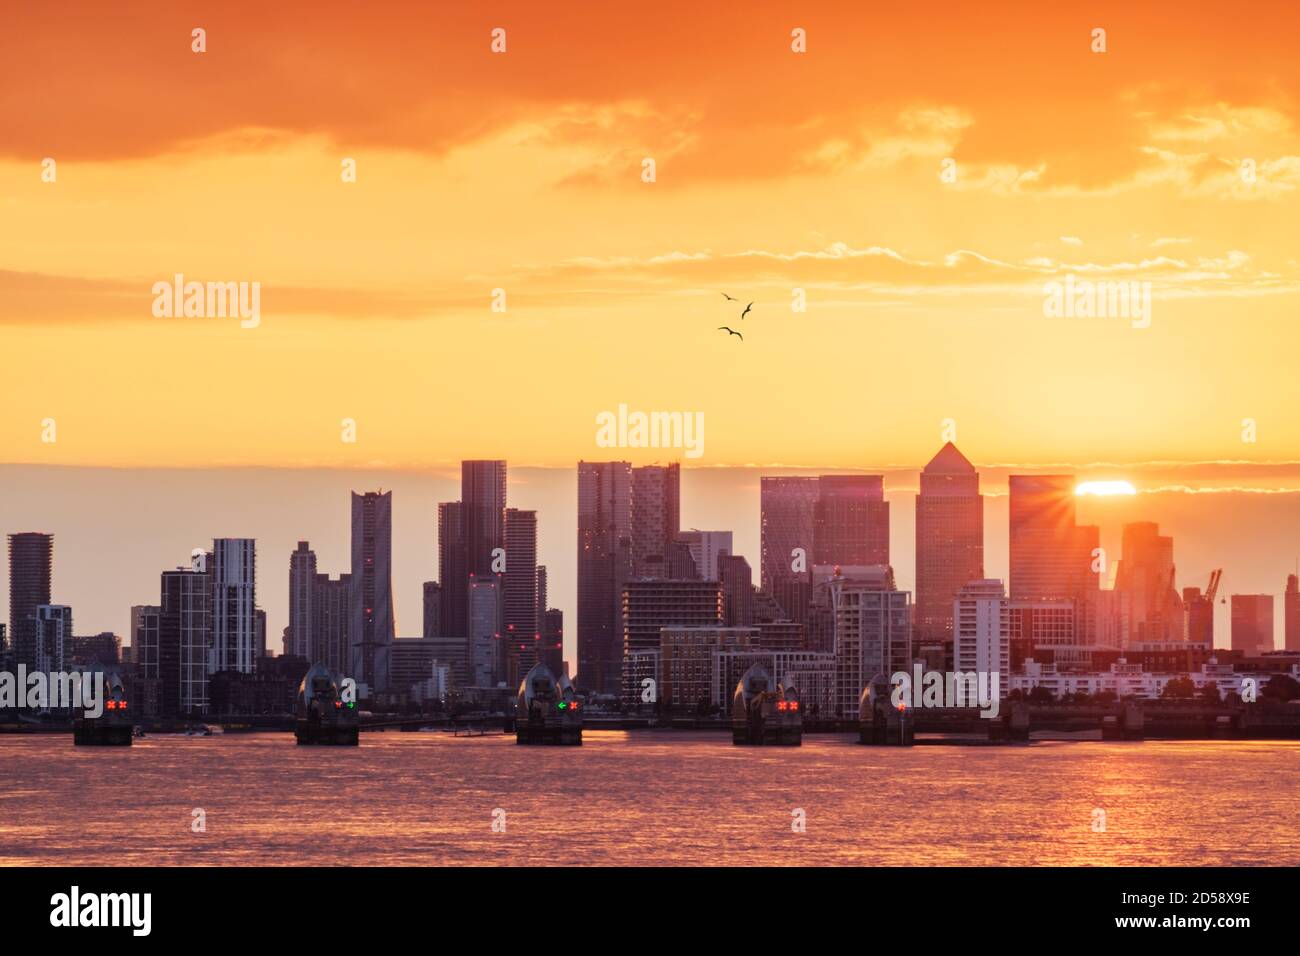 La Tamise, la barrière de la Tamise et les gratte-ciel de Canary Wharf au coucher du soleil, Londres, Angleterre, Royaume-Uni Banque D'Images